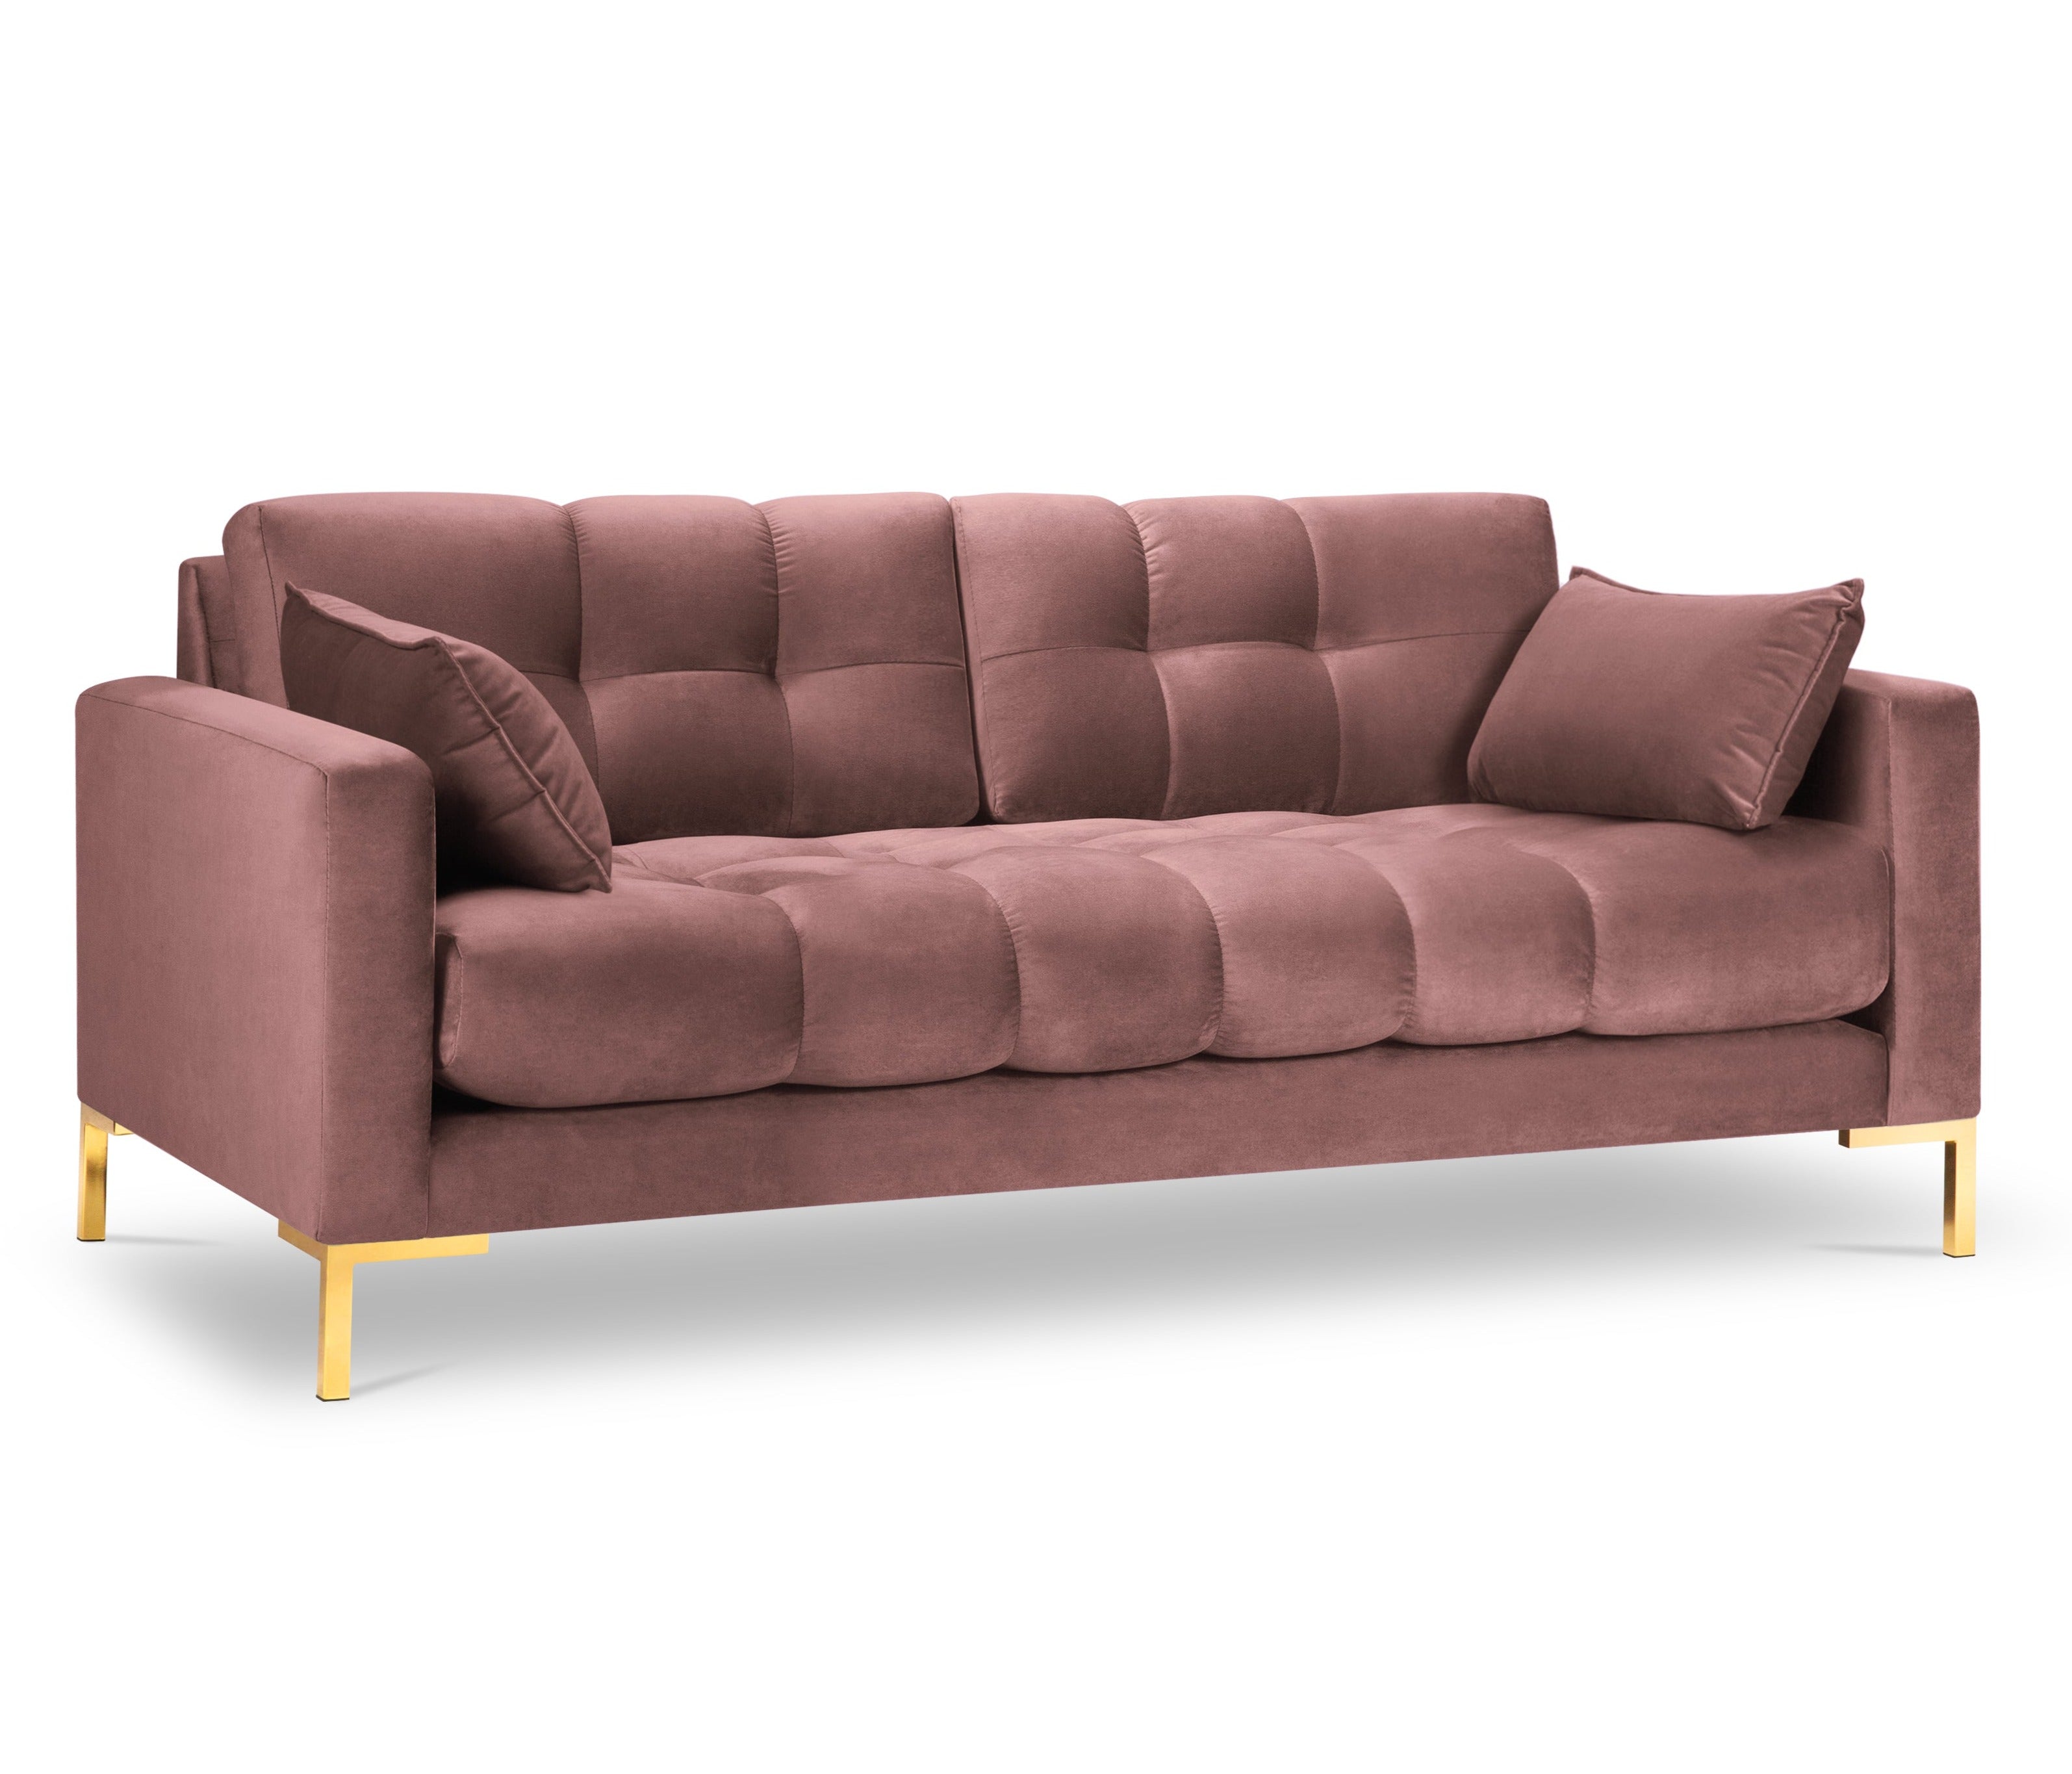 3rd pink velvet sofa